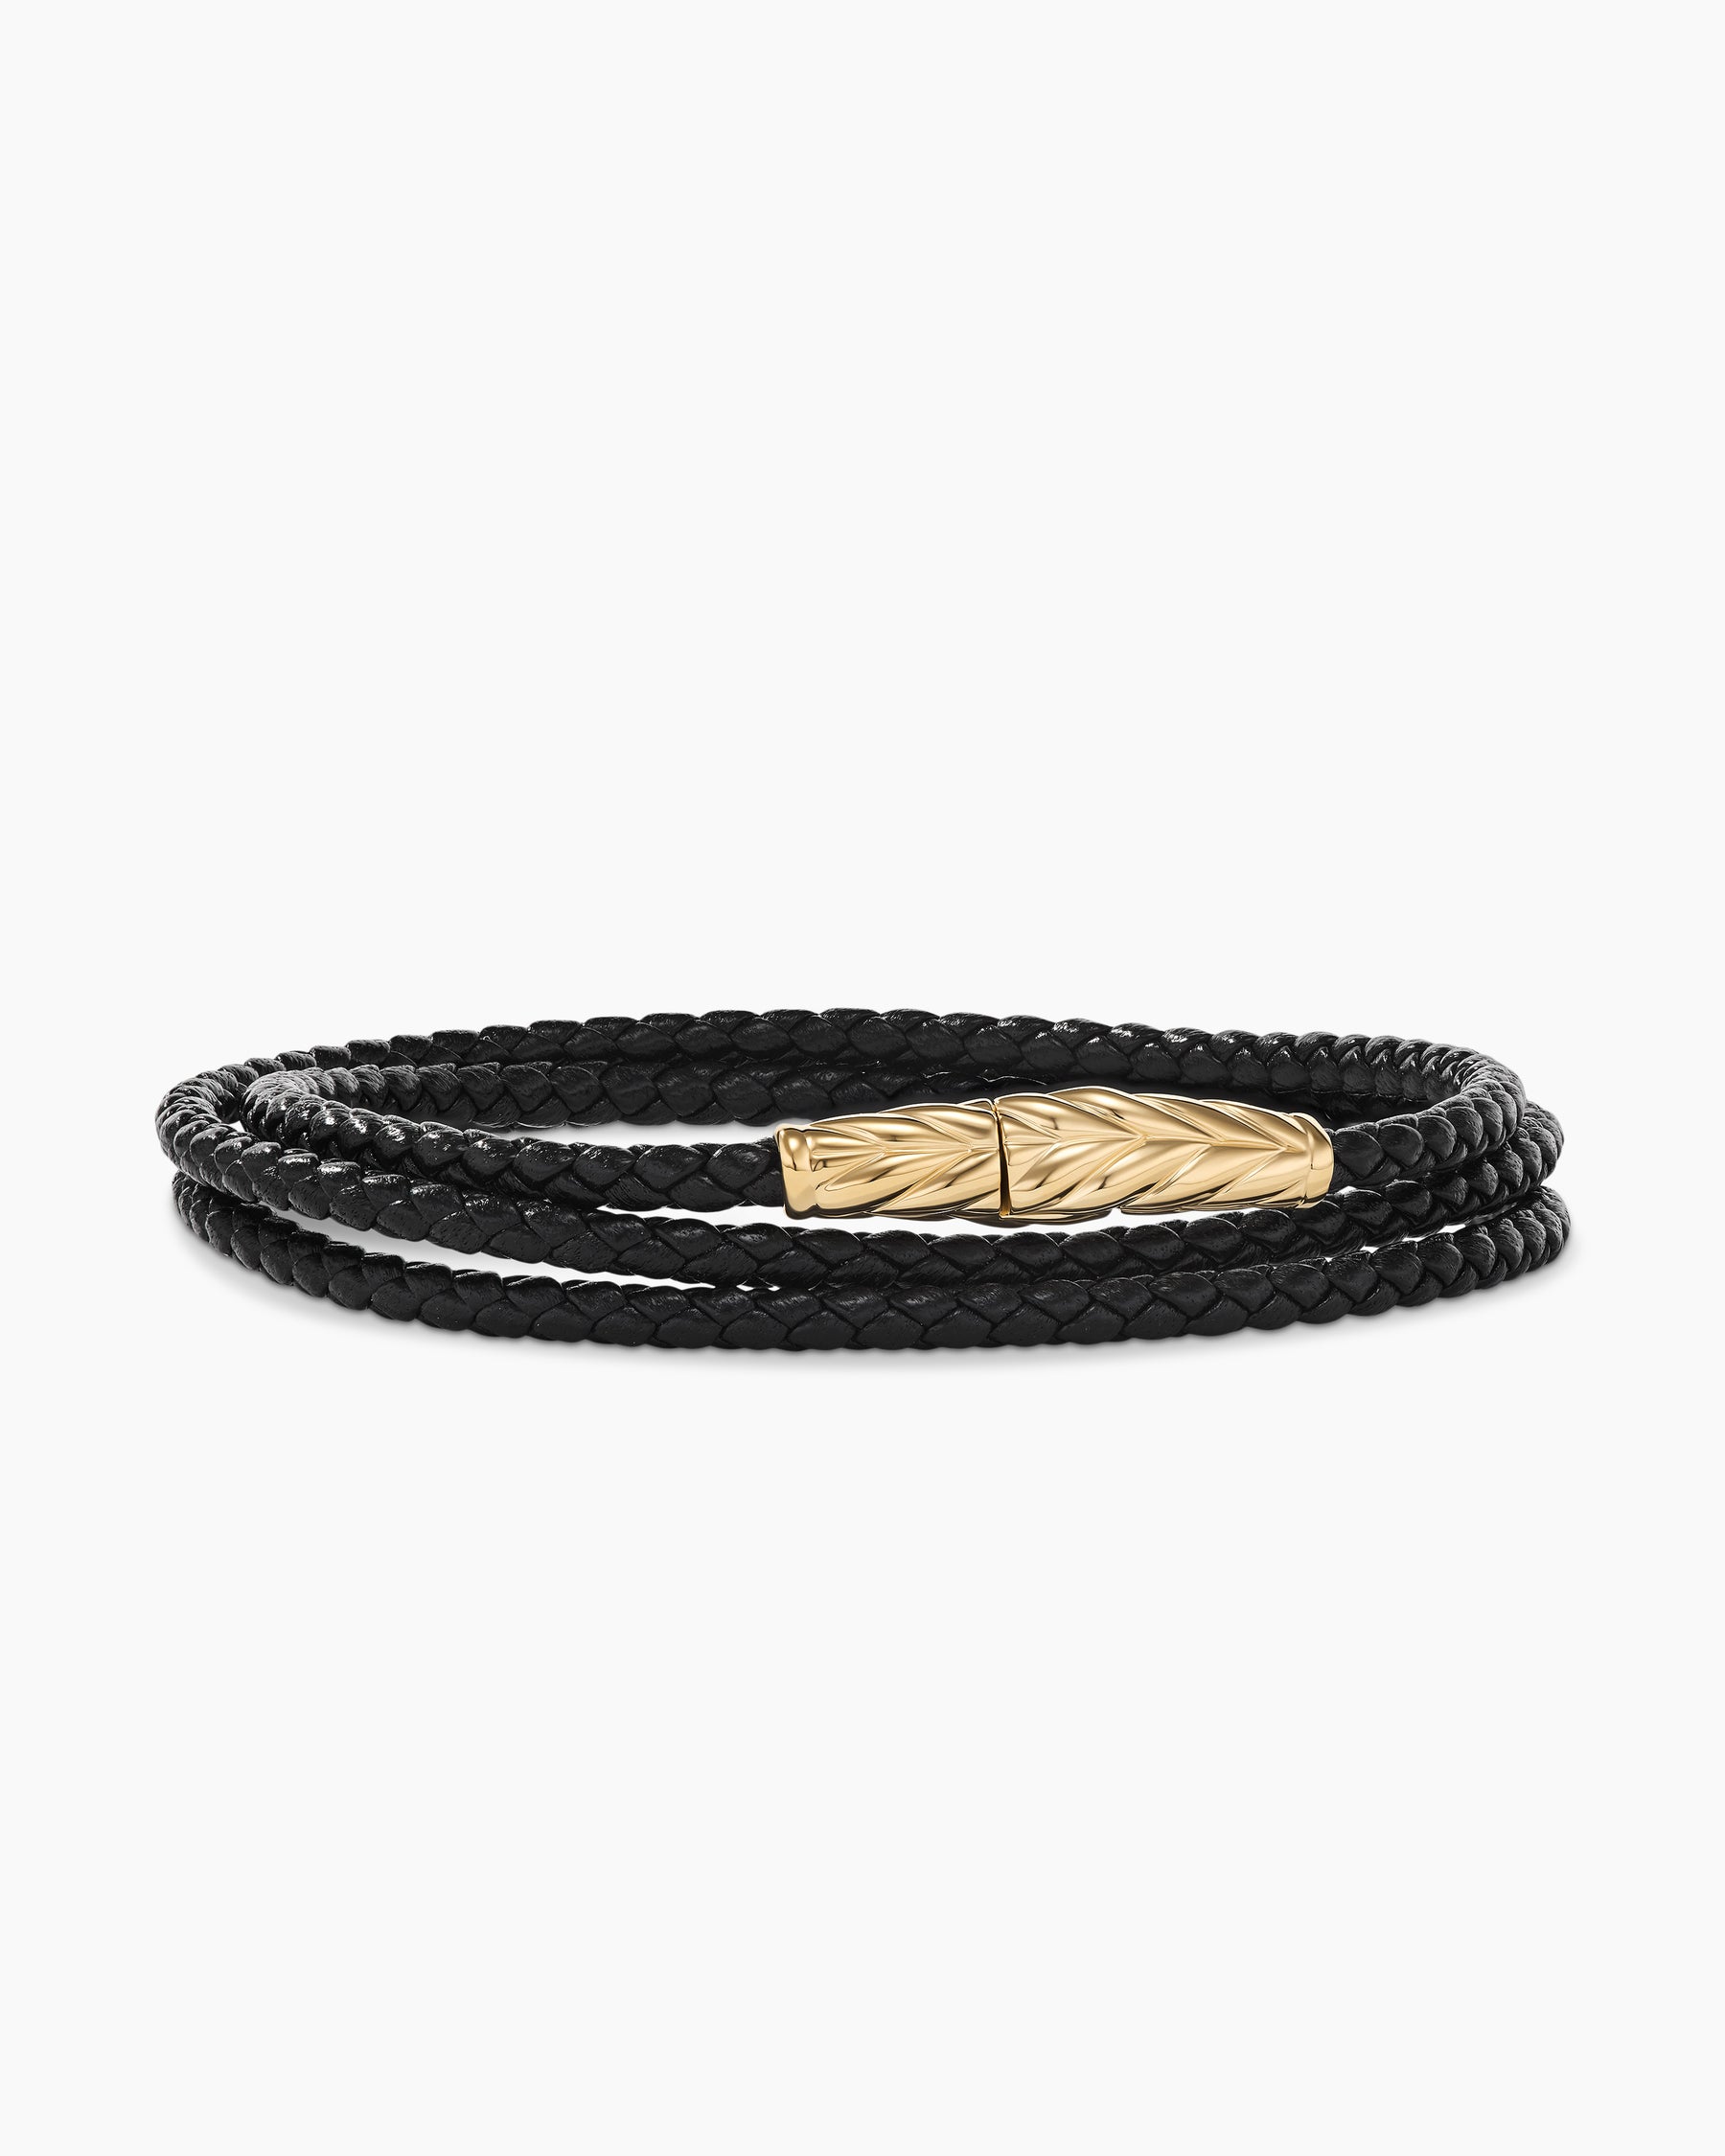  V-MORO Multilayer Wrap Suede Leather Strap Bracelet